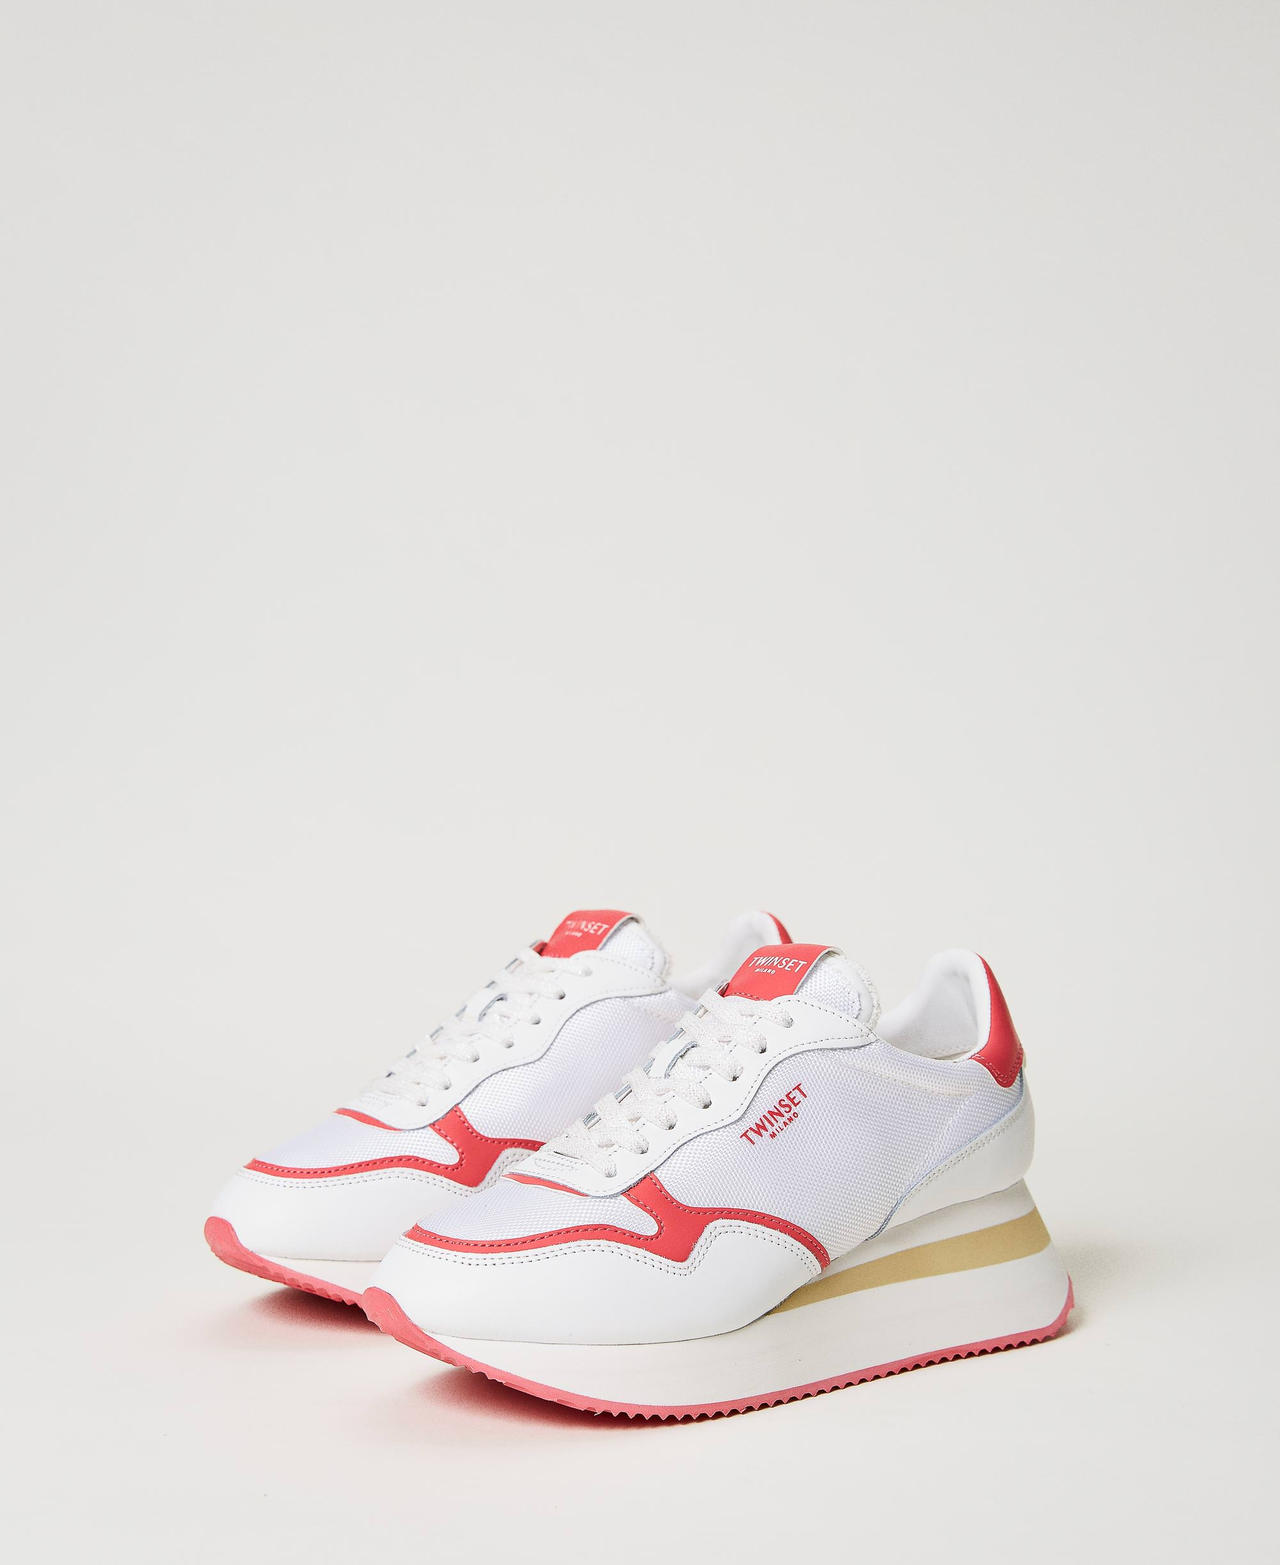 Sneakers wedge con inserciones en contraste Bicolor Blanco Óptico / Fucsia "Azalea" Mujer 231TCP018-02